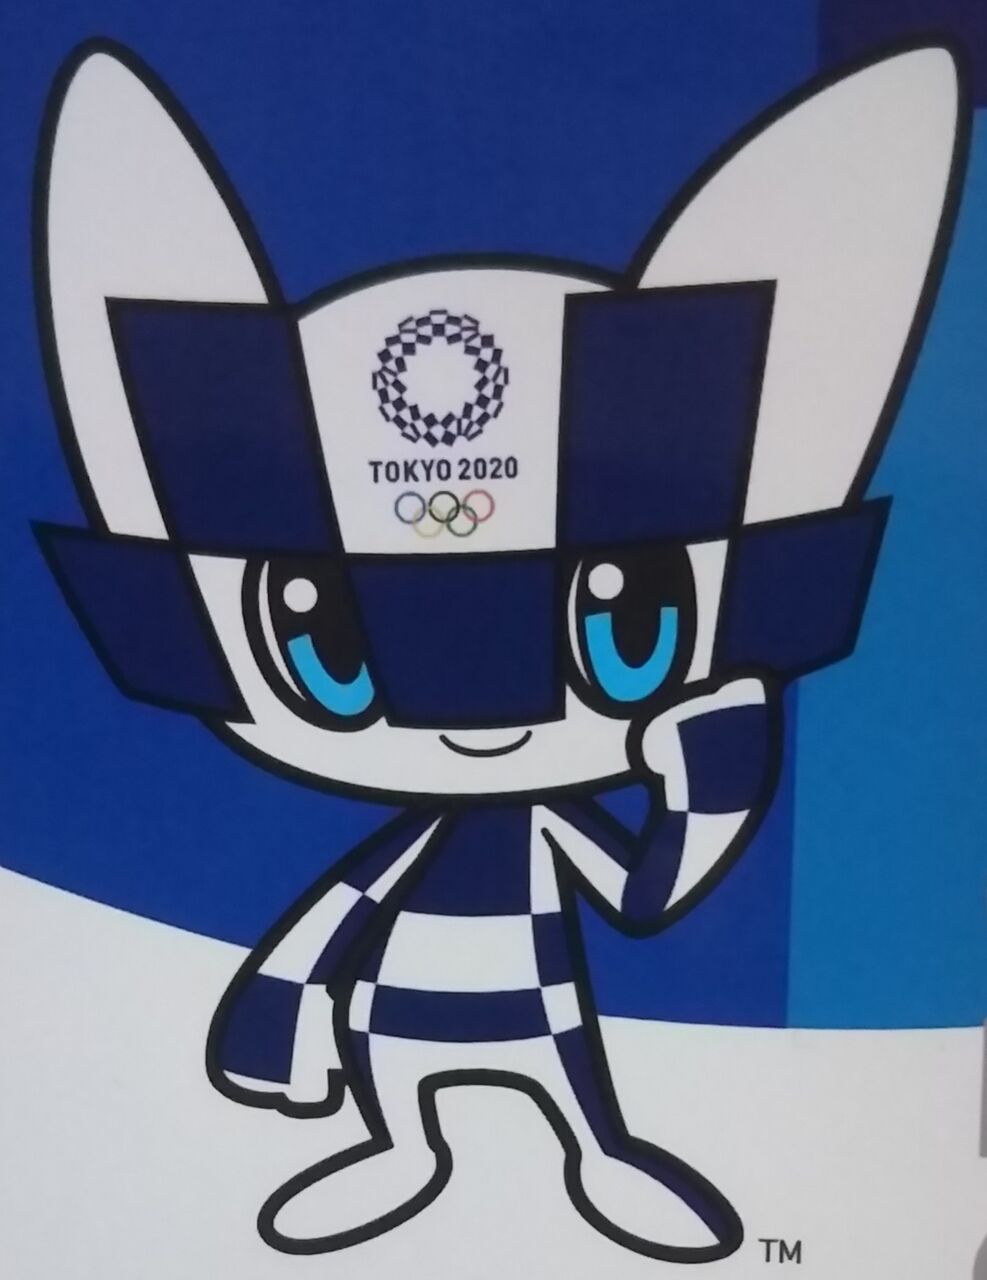 各競技の開催期間も載っています 東京 オリンピックマスコット ミライトワ ステッカーウエハース 東京 パラリンピックマスコット ソメイティ ステッカーウエハース Chaos Hobby Blog